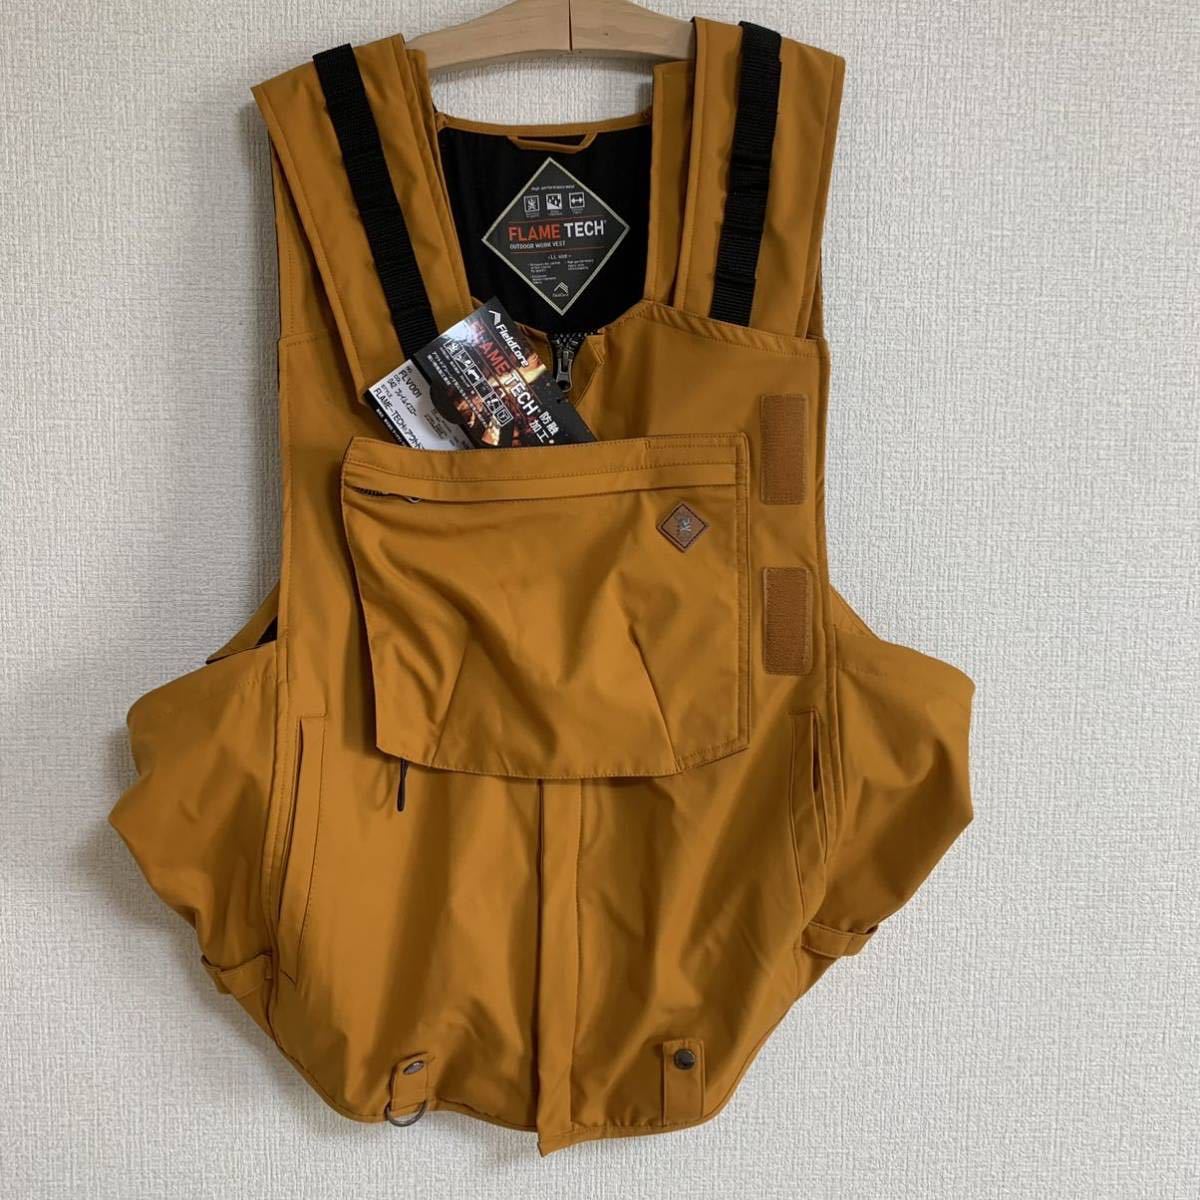 激安単価で OMM Core vest オレンジ Mサイズ thiesdistribution.com